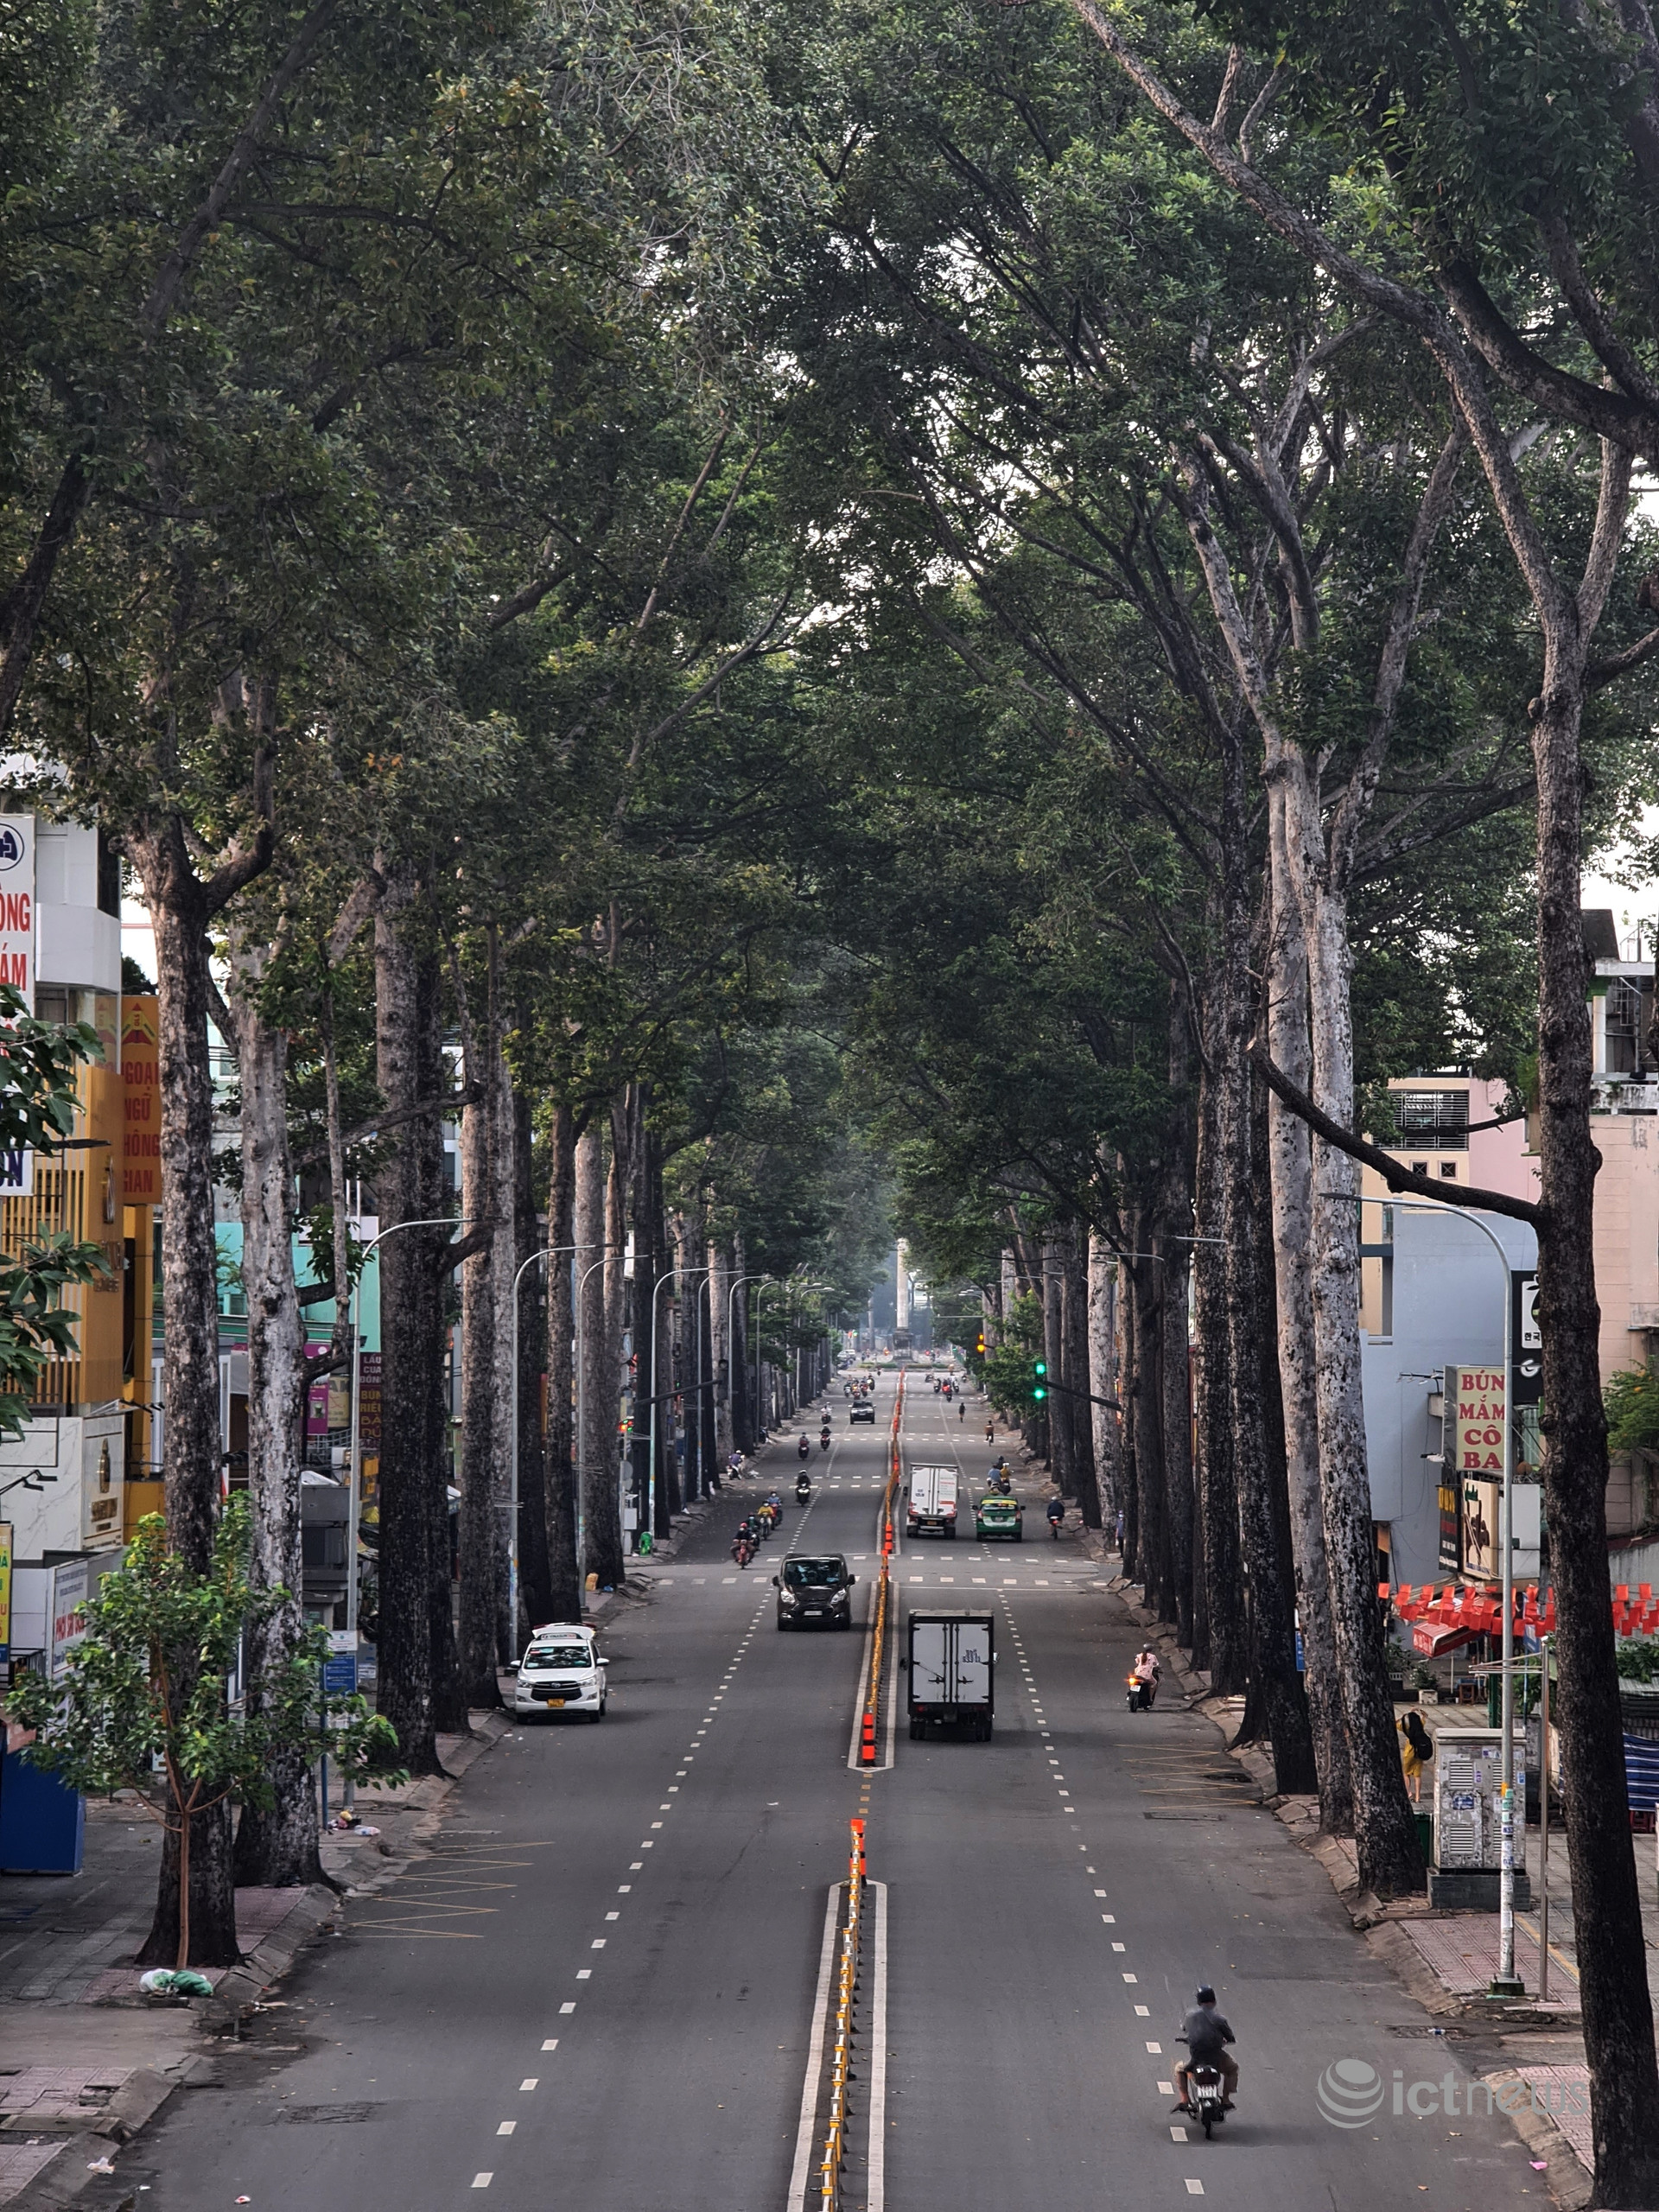 Hình ảnh Sài Gòn ngày đầu nới lỏng giãn cách qua ống kính smartphone